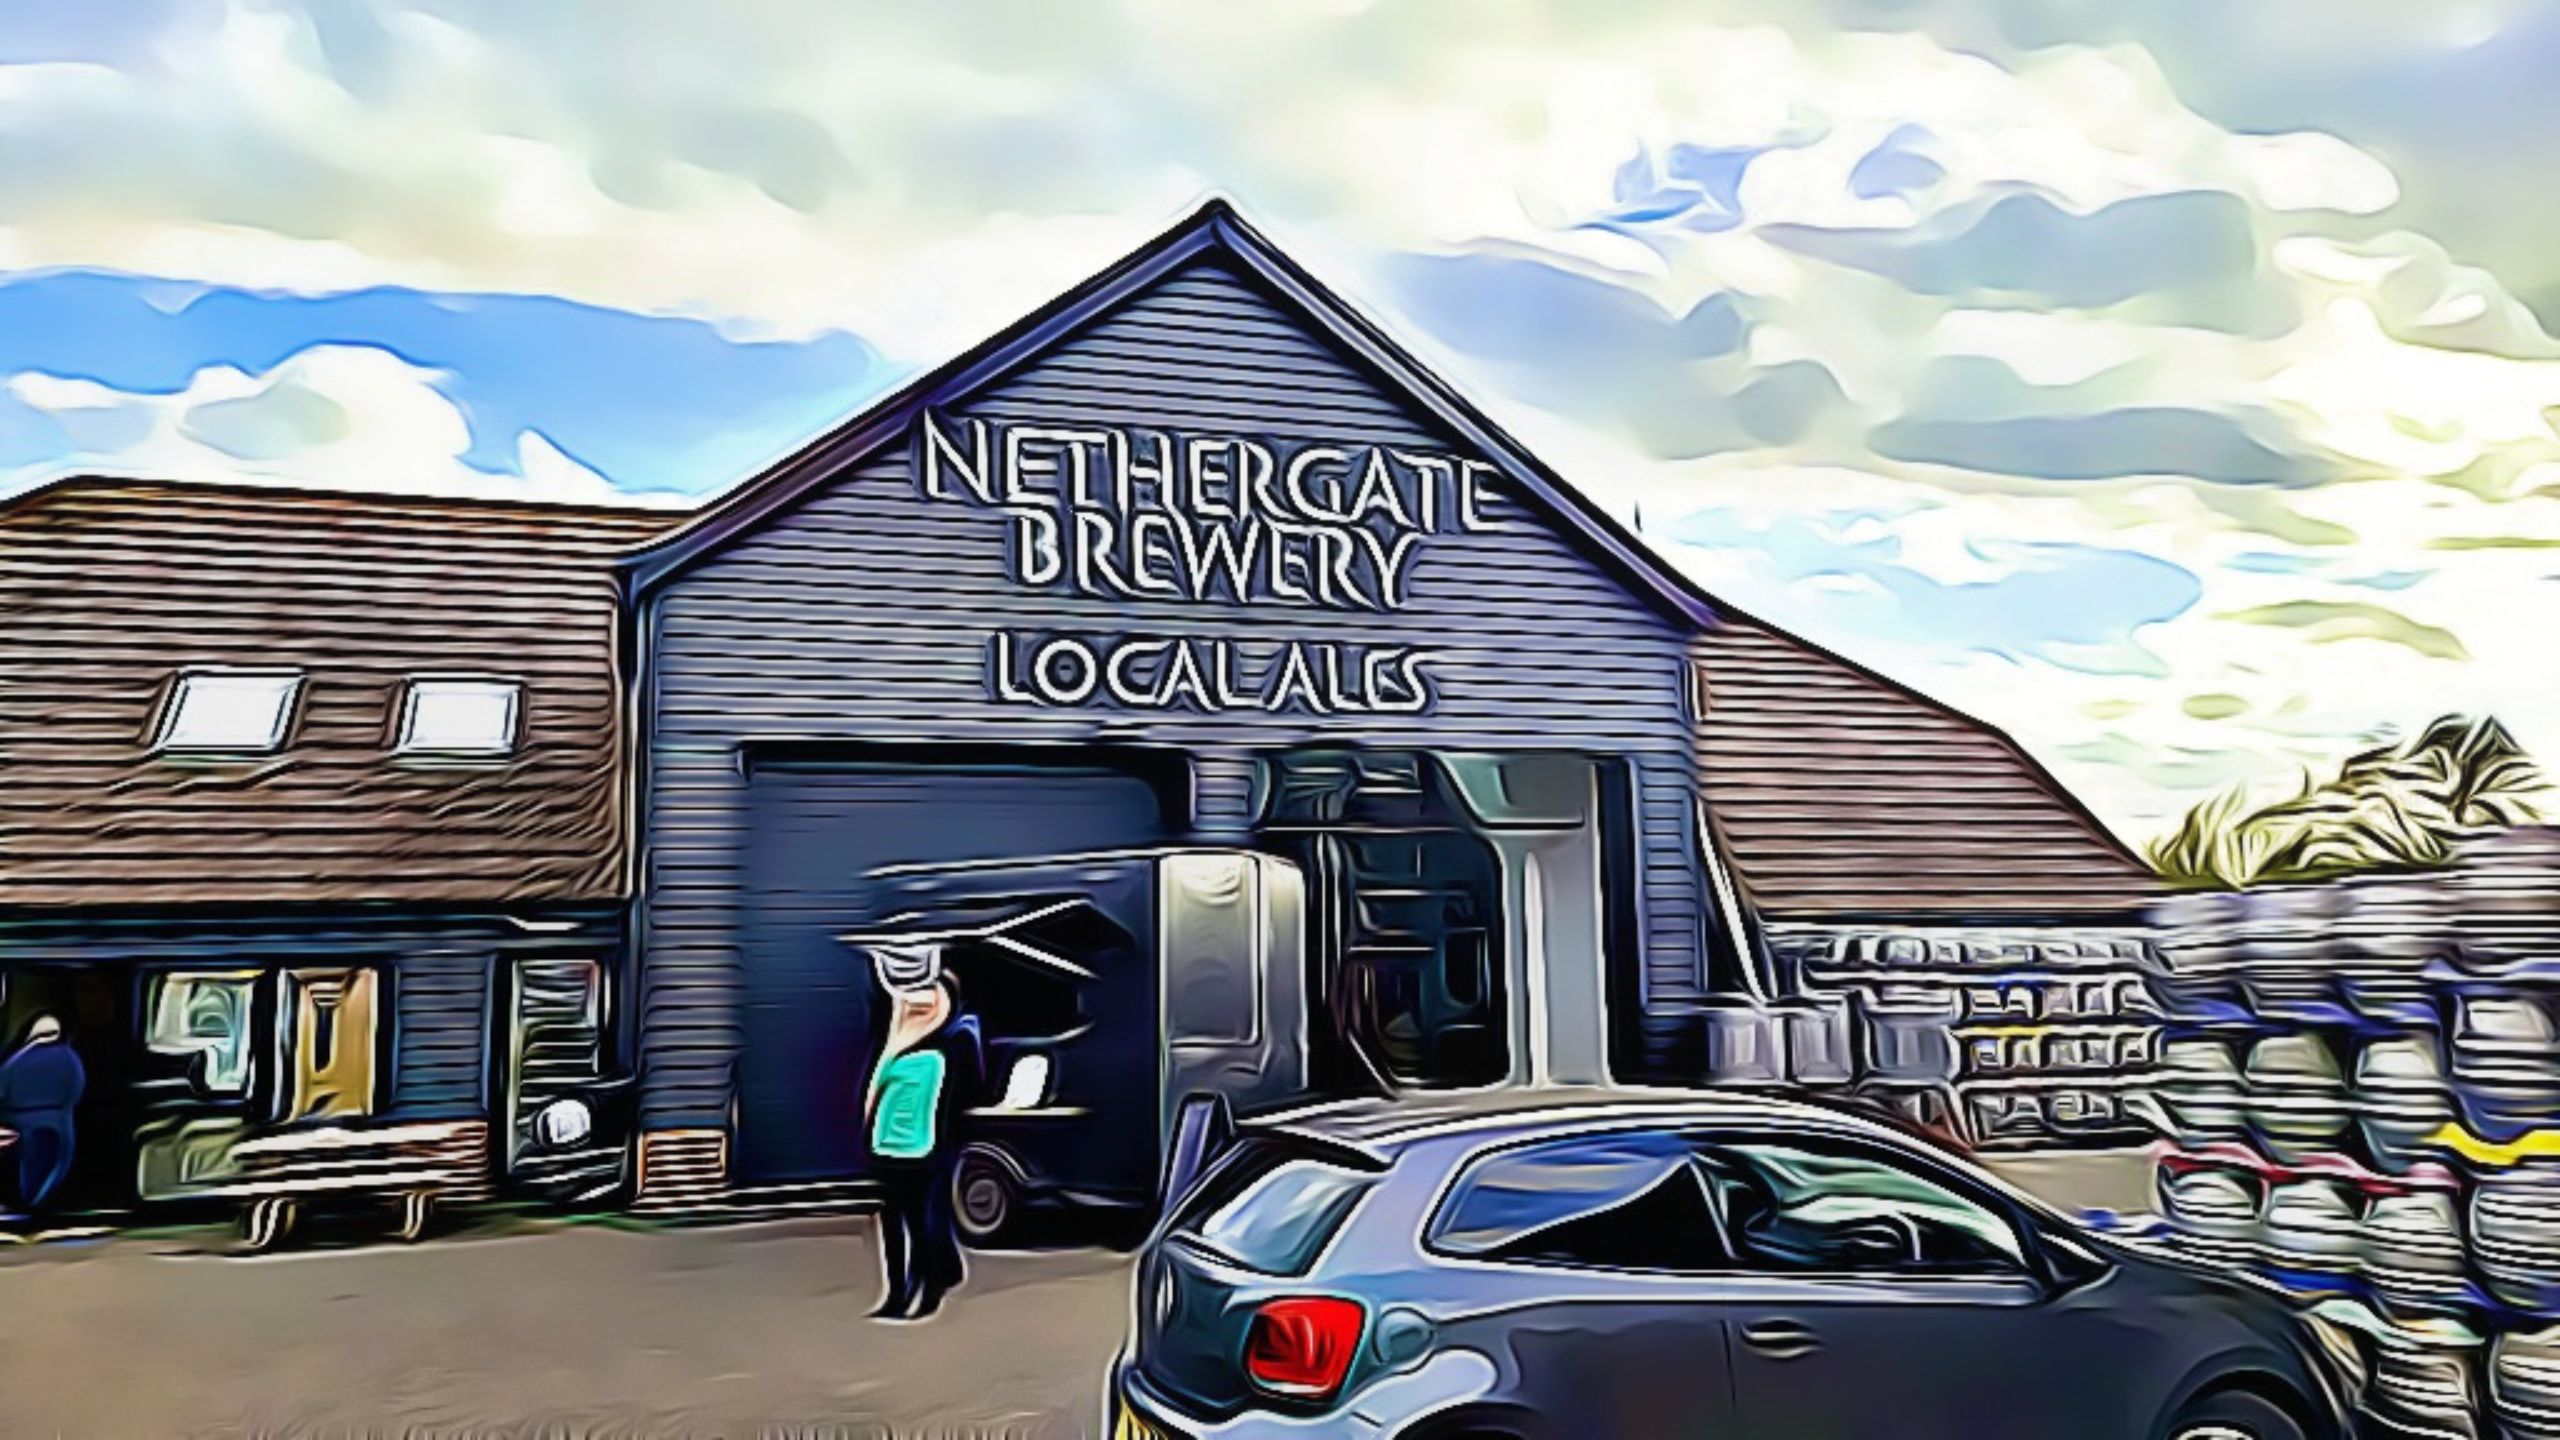 Nethergate Brewery